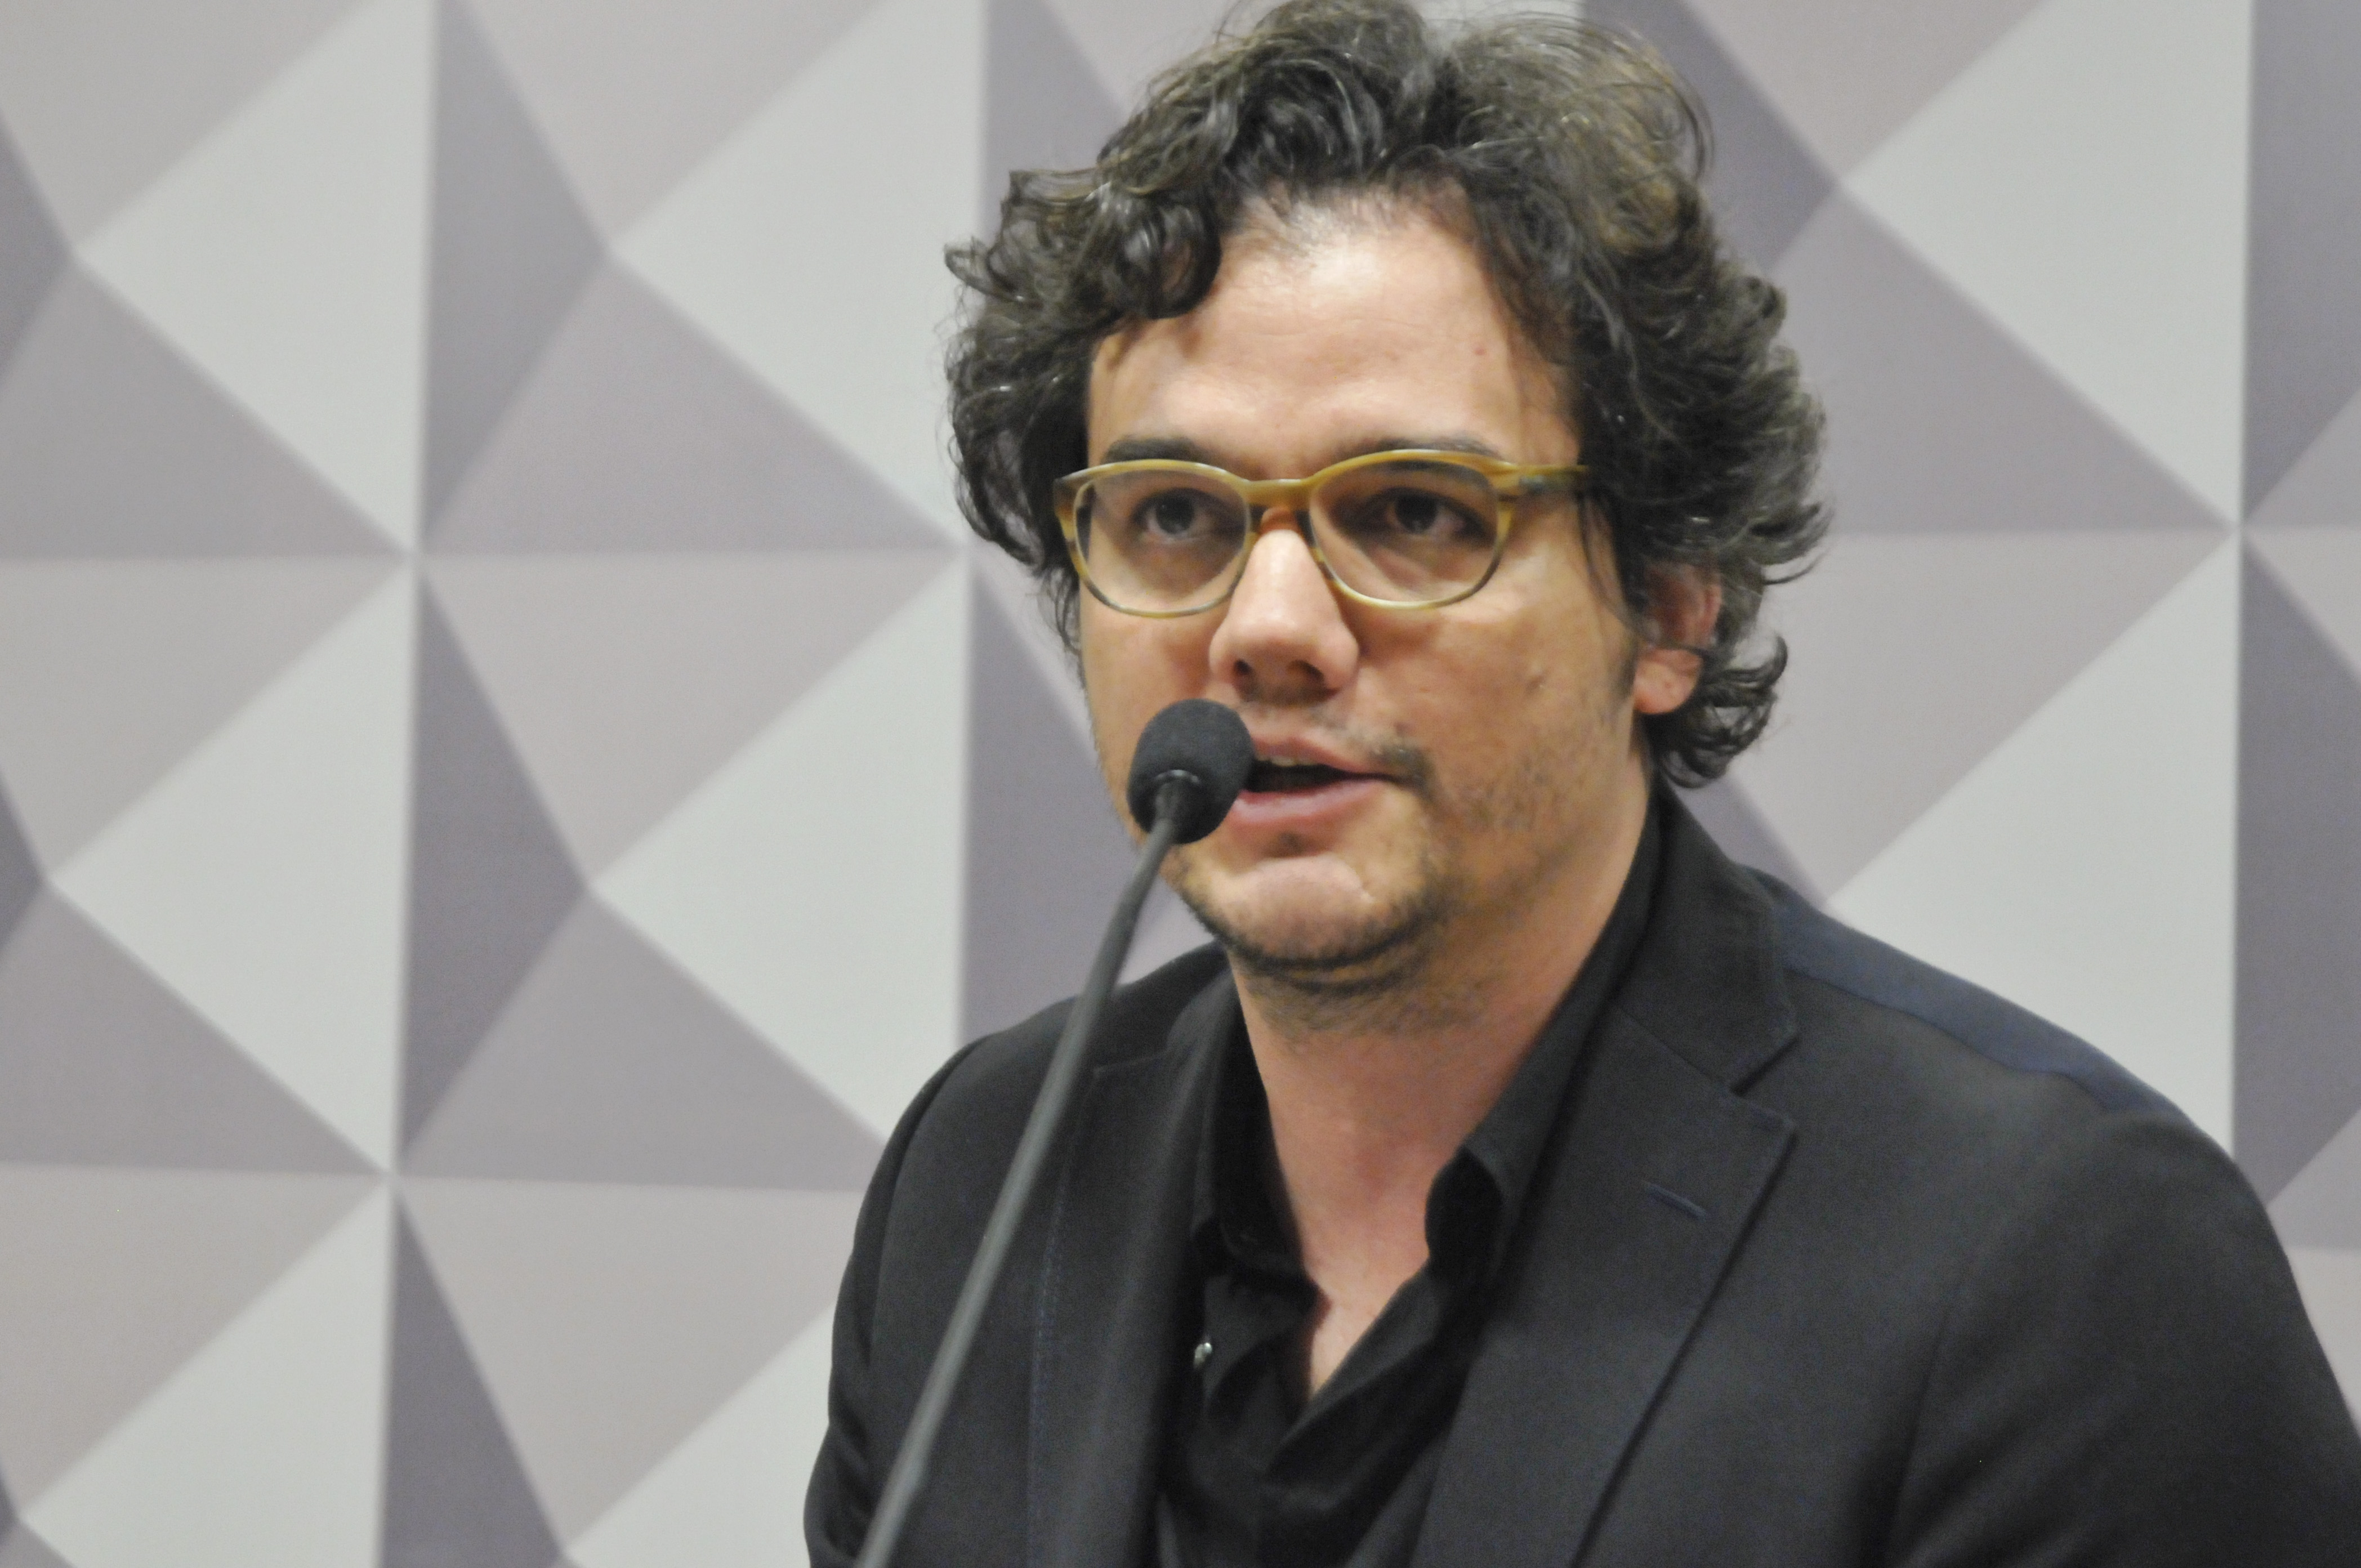 Wagner Moura participará de painel no festival SXSW; saiba mais